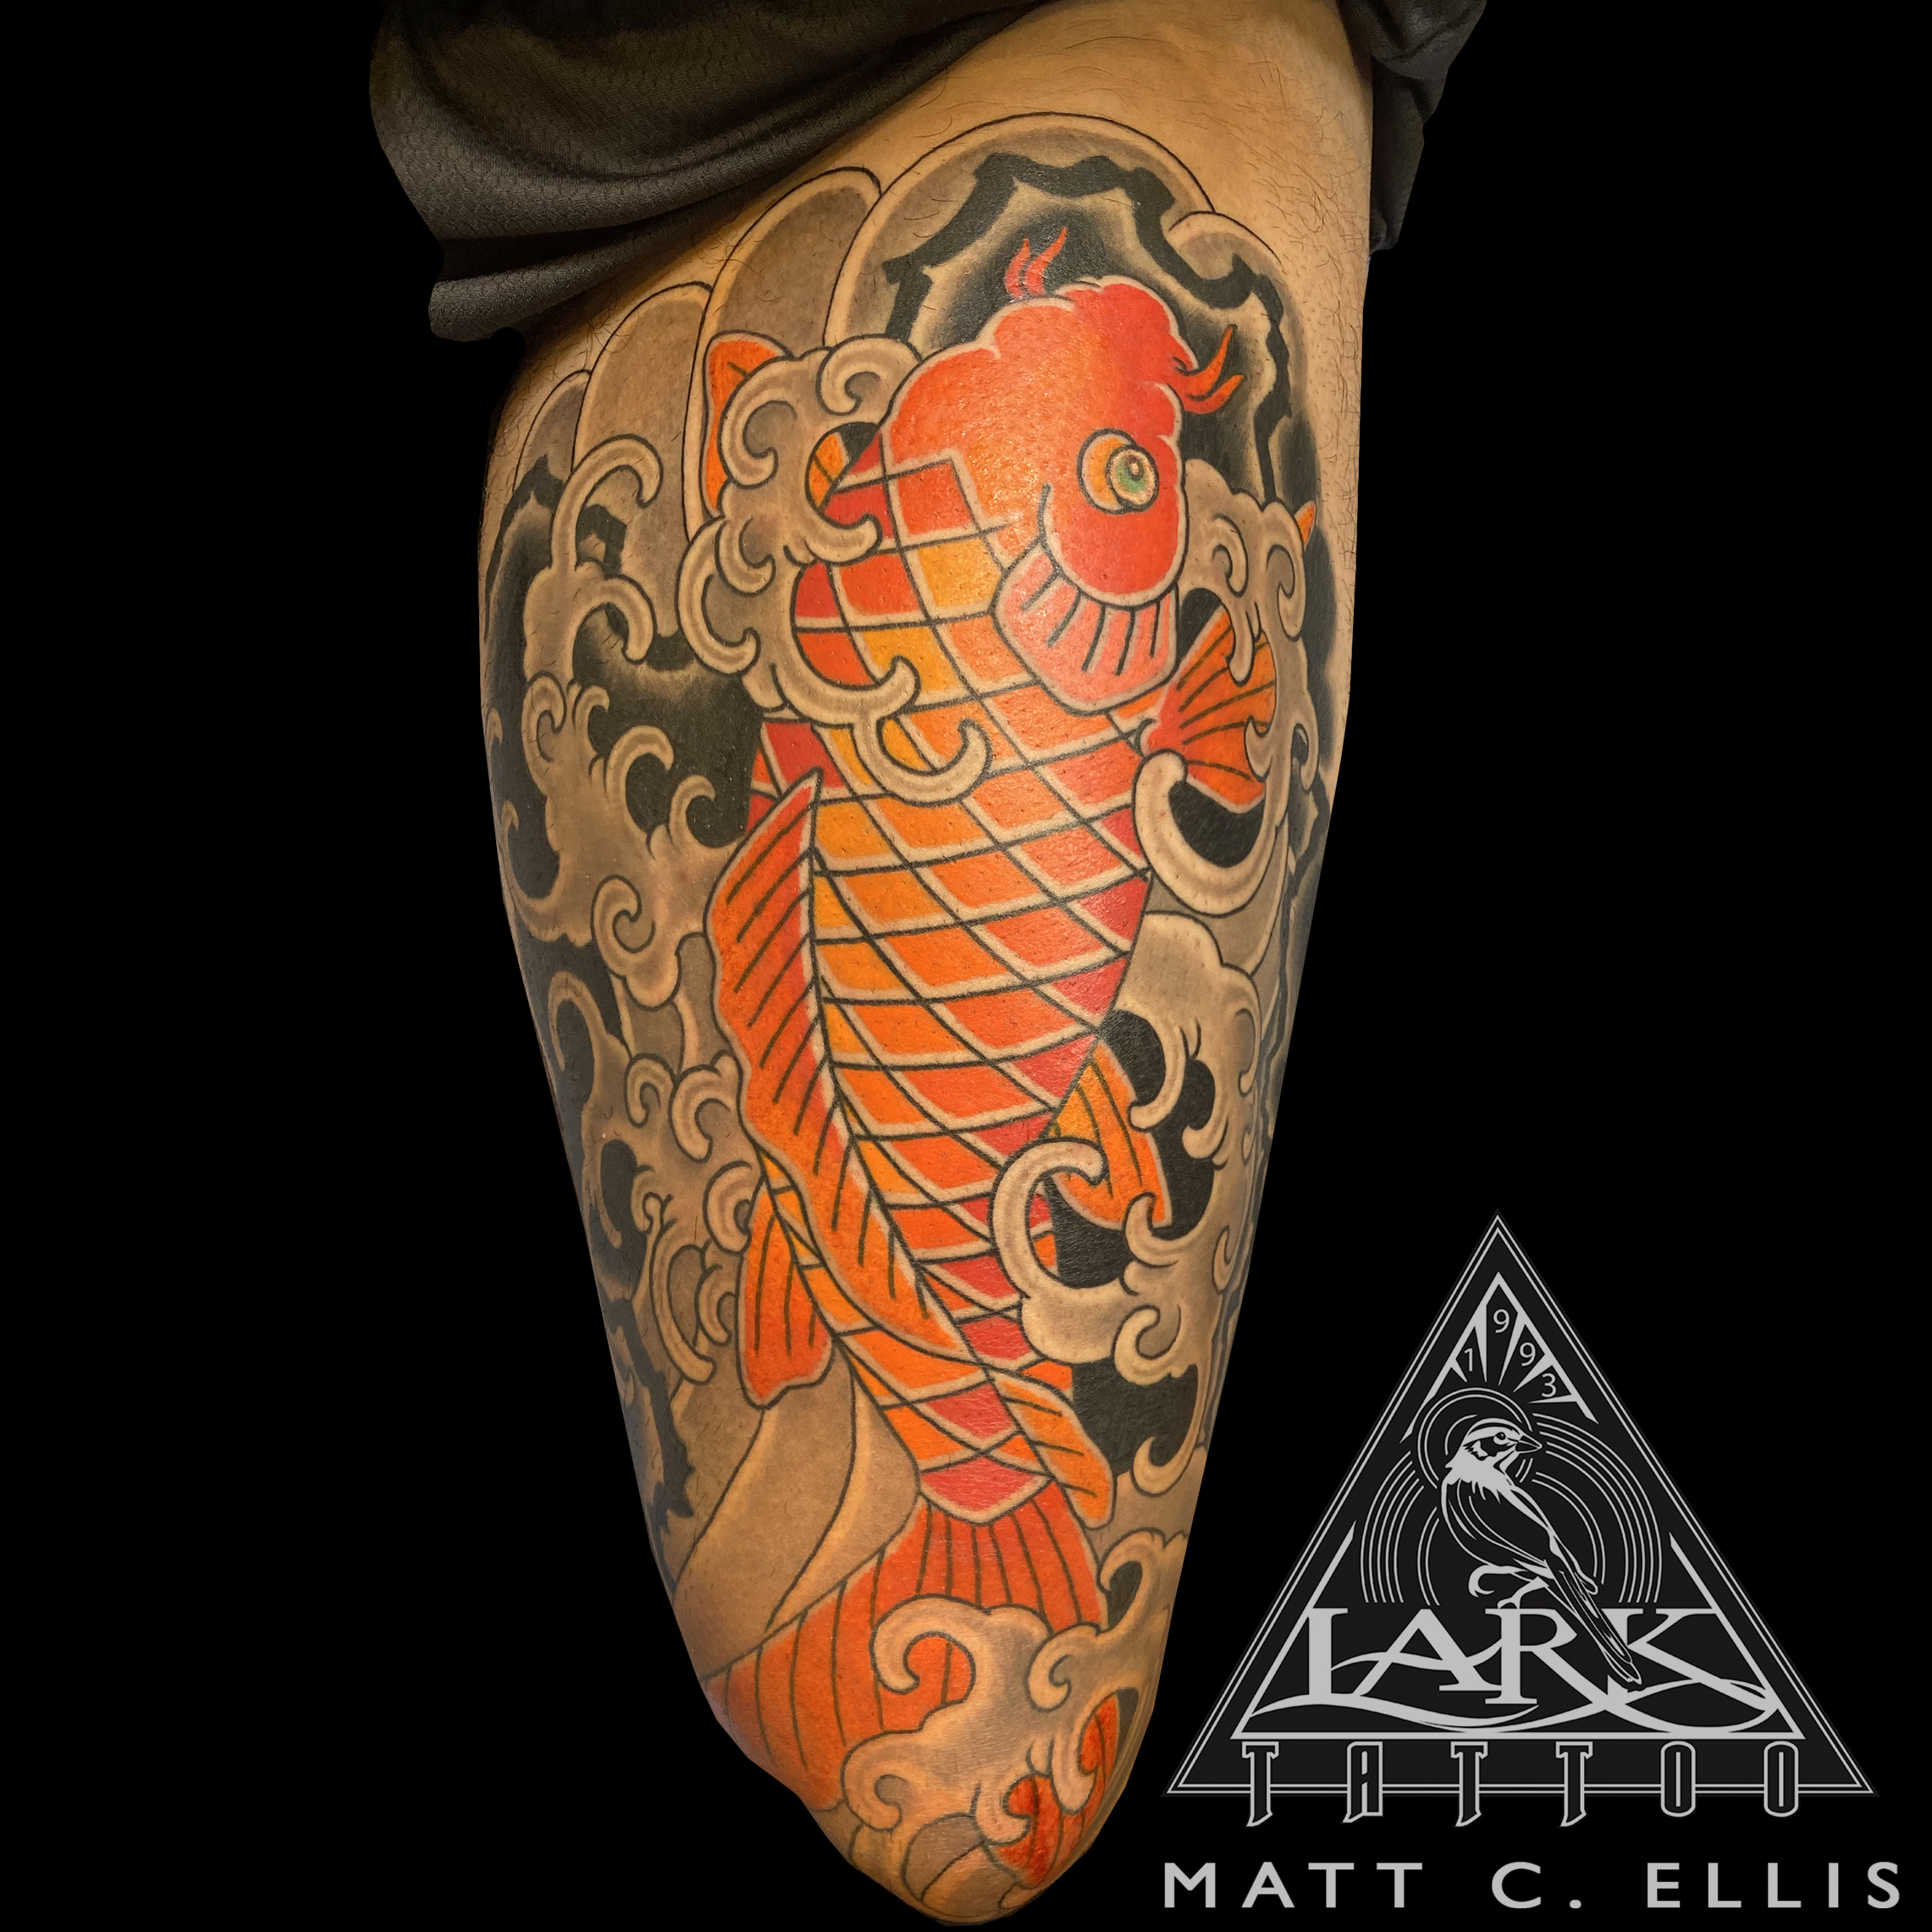 #LarkTattoo #MattEllis #MattEllisLarkTattoo #Tattoo #Tattoos #Koi #KoiTattoo #Japanese #JapaneseTattoo #Fish #FishTattoo #ThighTattoo #ColorTattoo #JapaneseKoi #JapaneseKoiTattoo #TattooArtist #Tattoist #Tattooer #LongIslandTattooArtist #LongIslandTattooer #LongIslandTattoo #TattooOfTheDay #Tat #Tats #Tatts #Tatted #Inked #Ink #TattooInk #AmazingInk #AmazingTattoo #BodyArt #LarkTattooWestbury #Westbury #LongIsland #NY #NewYork #USA #Art #Tattedup #InkedUp #LarkTattoos